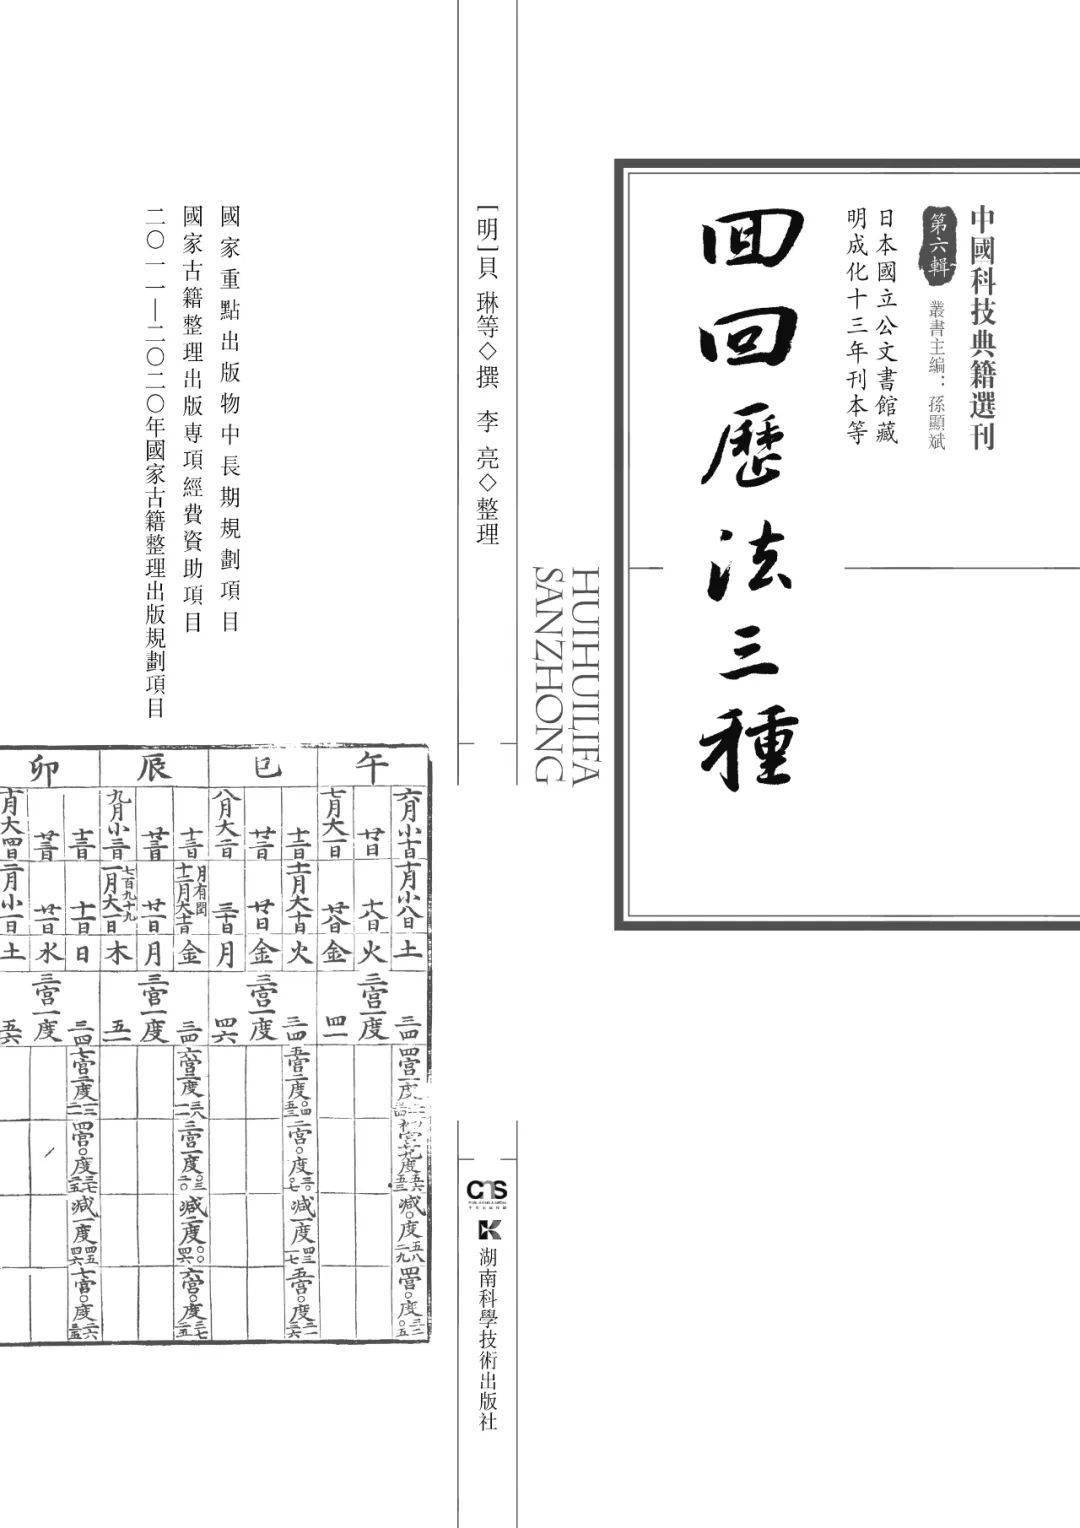 新书丨《中国科技典籍选刊》第六辑出版_手机搜狐网